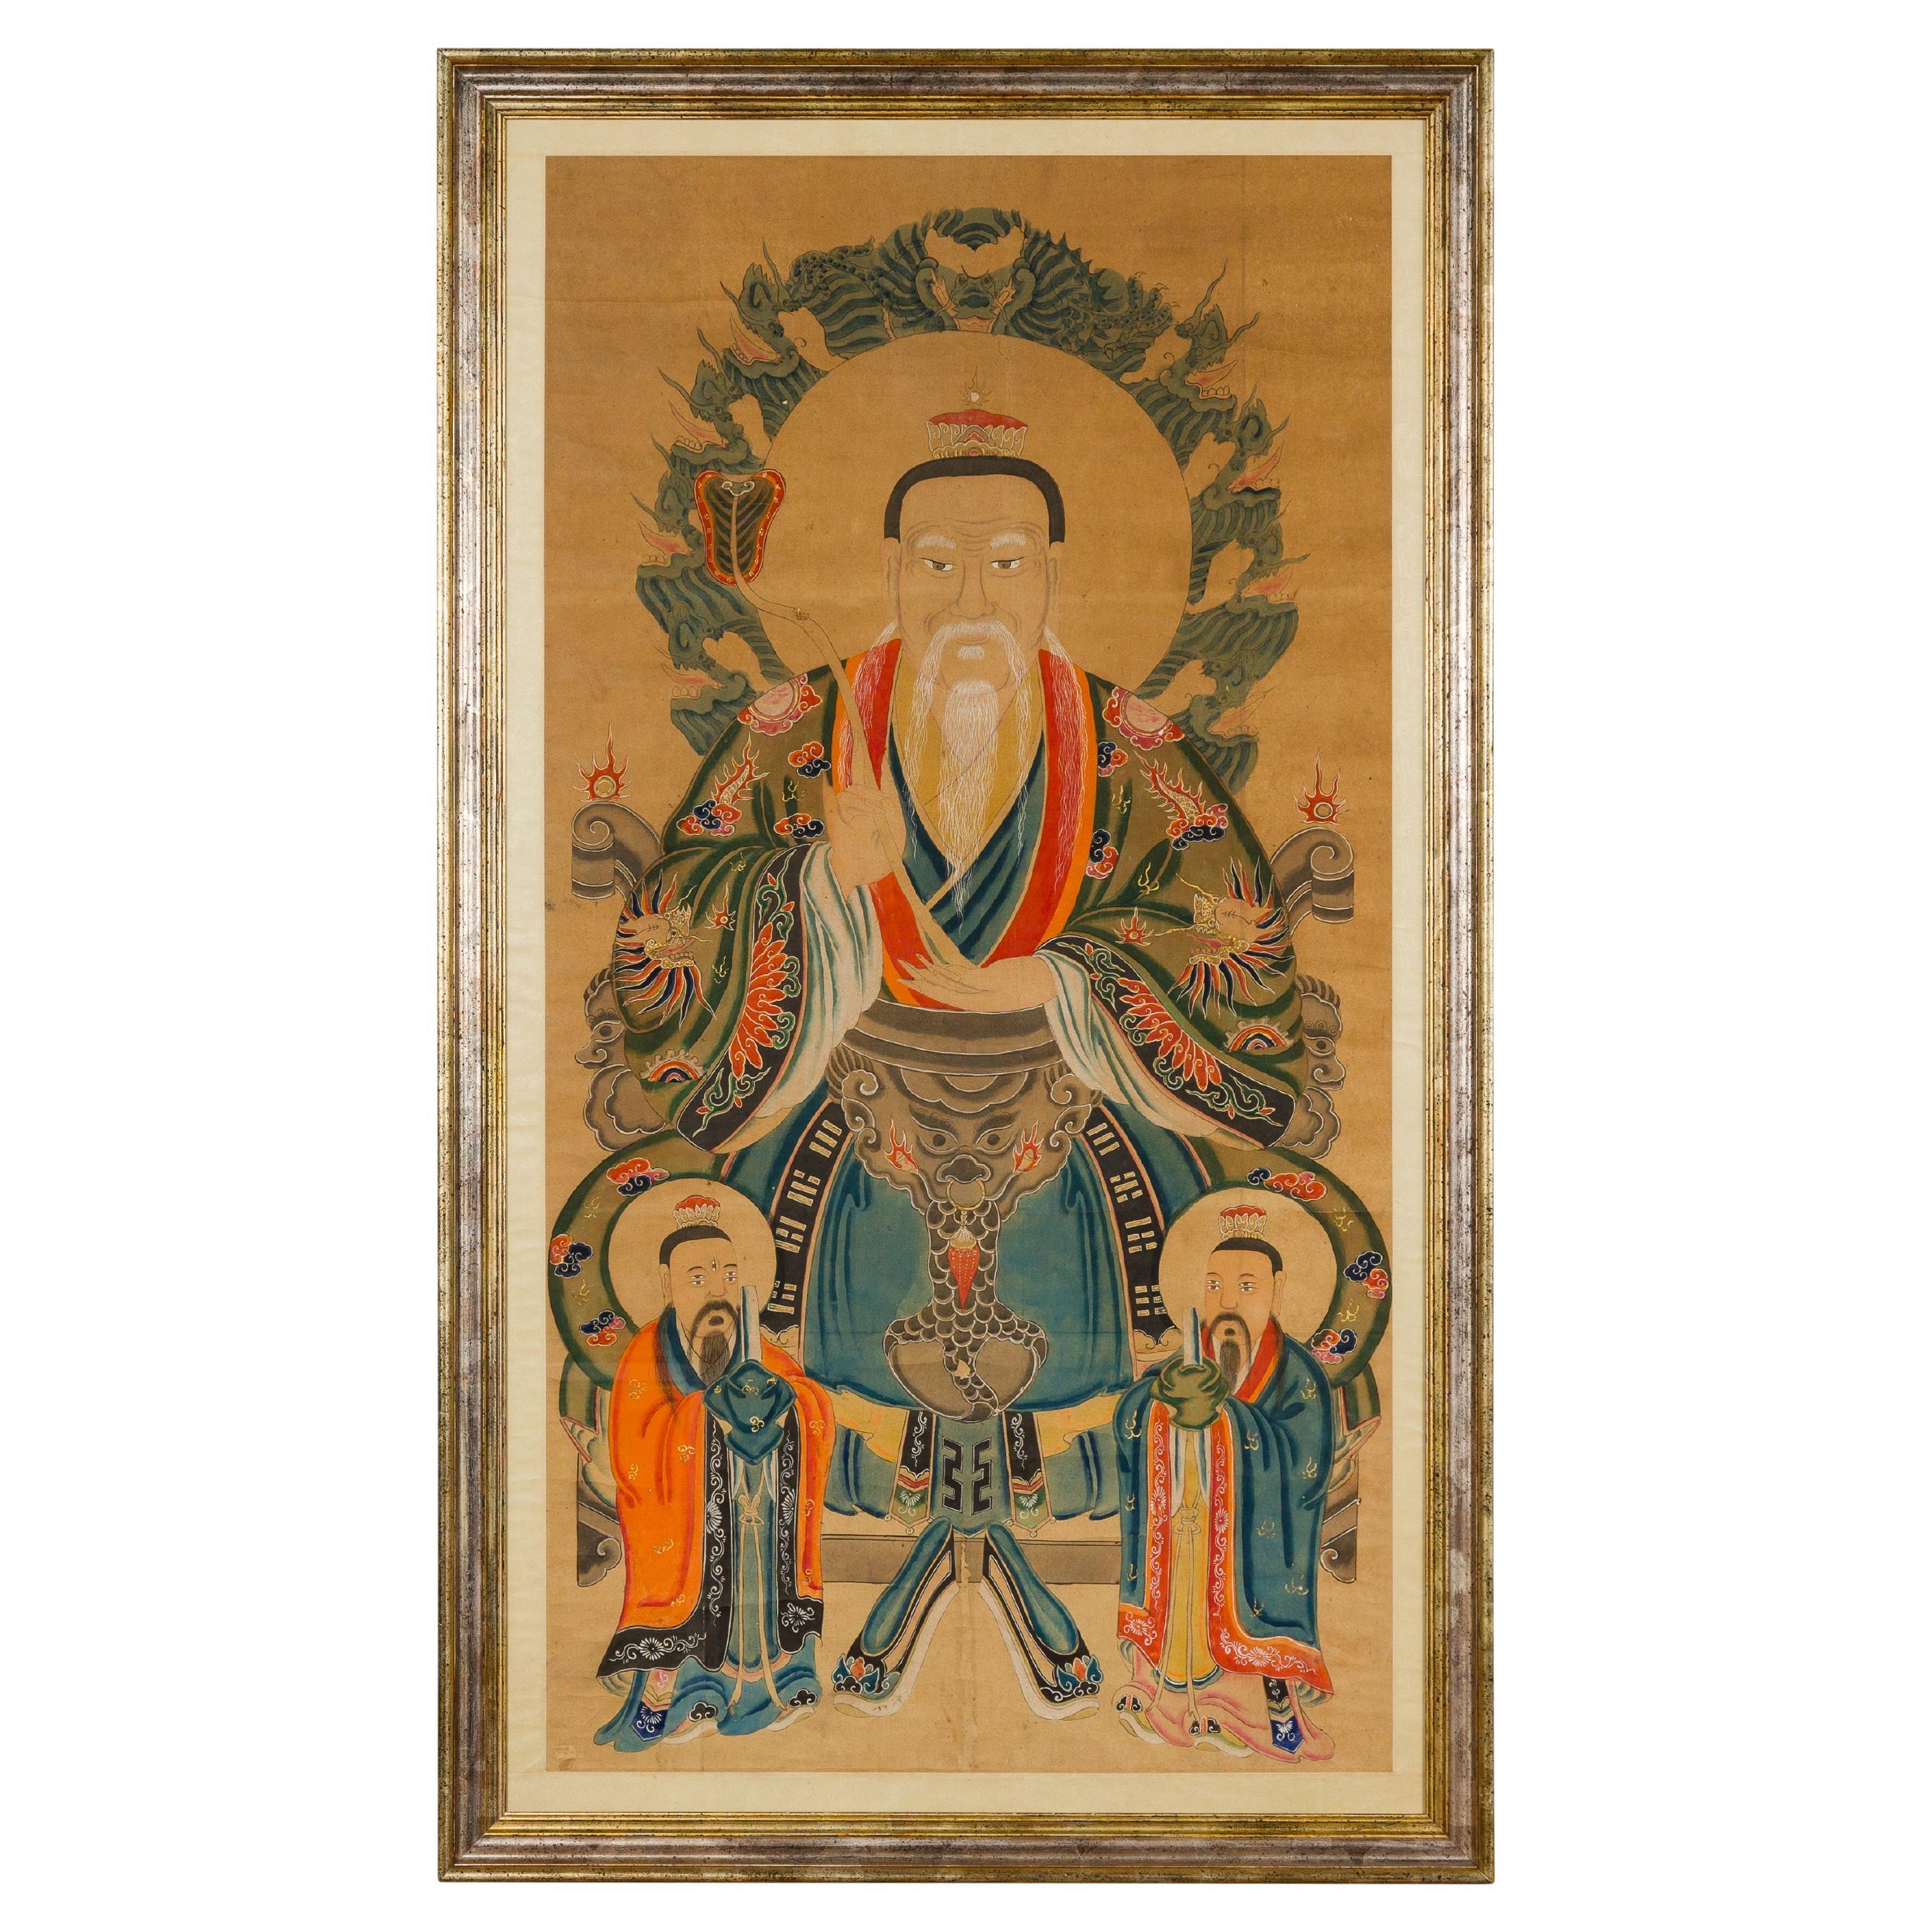 Taoistisches handbemaltes Porträt auf Pergamentpapier in maßgefertigtem Rahmen